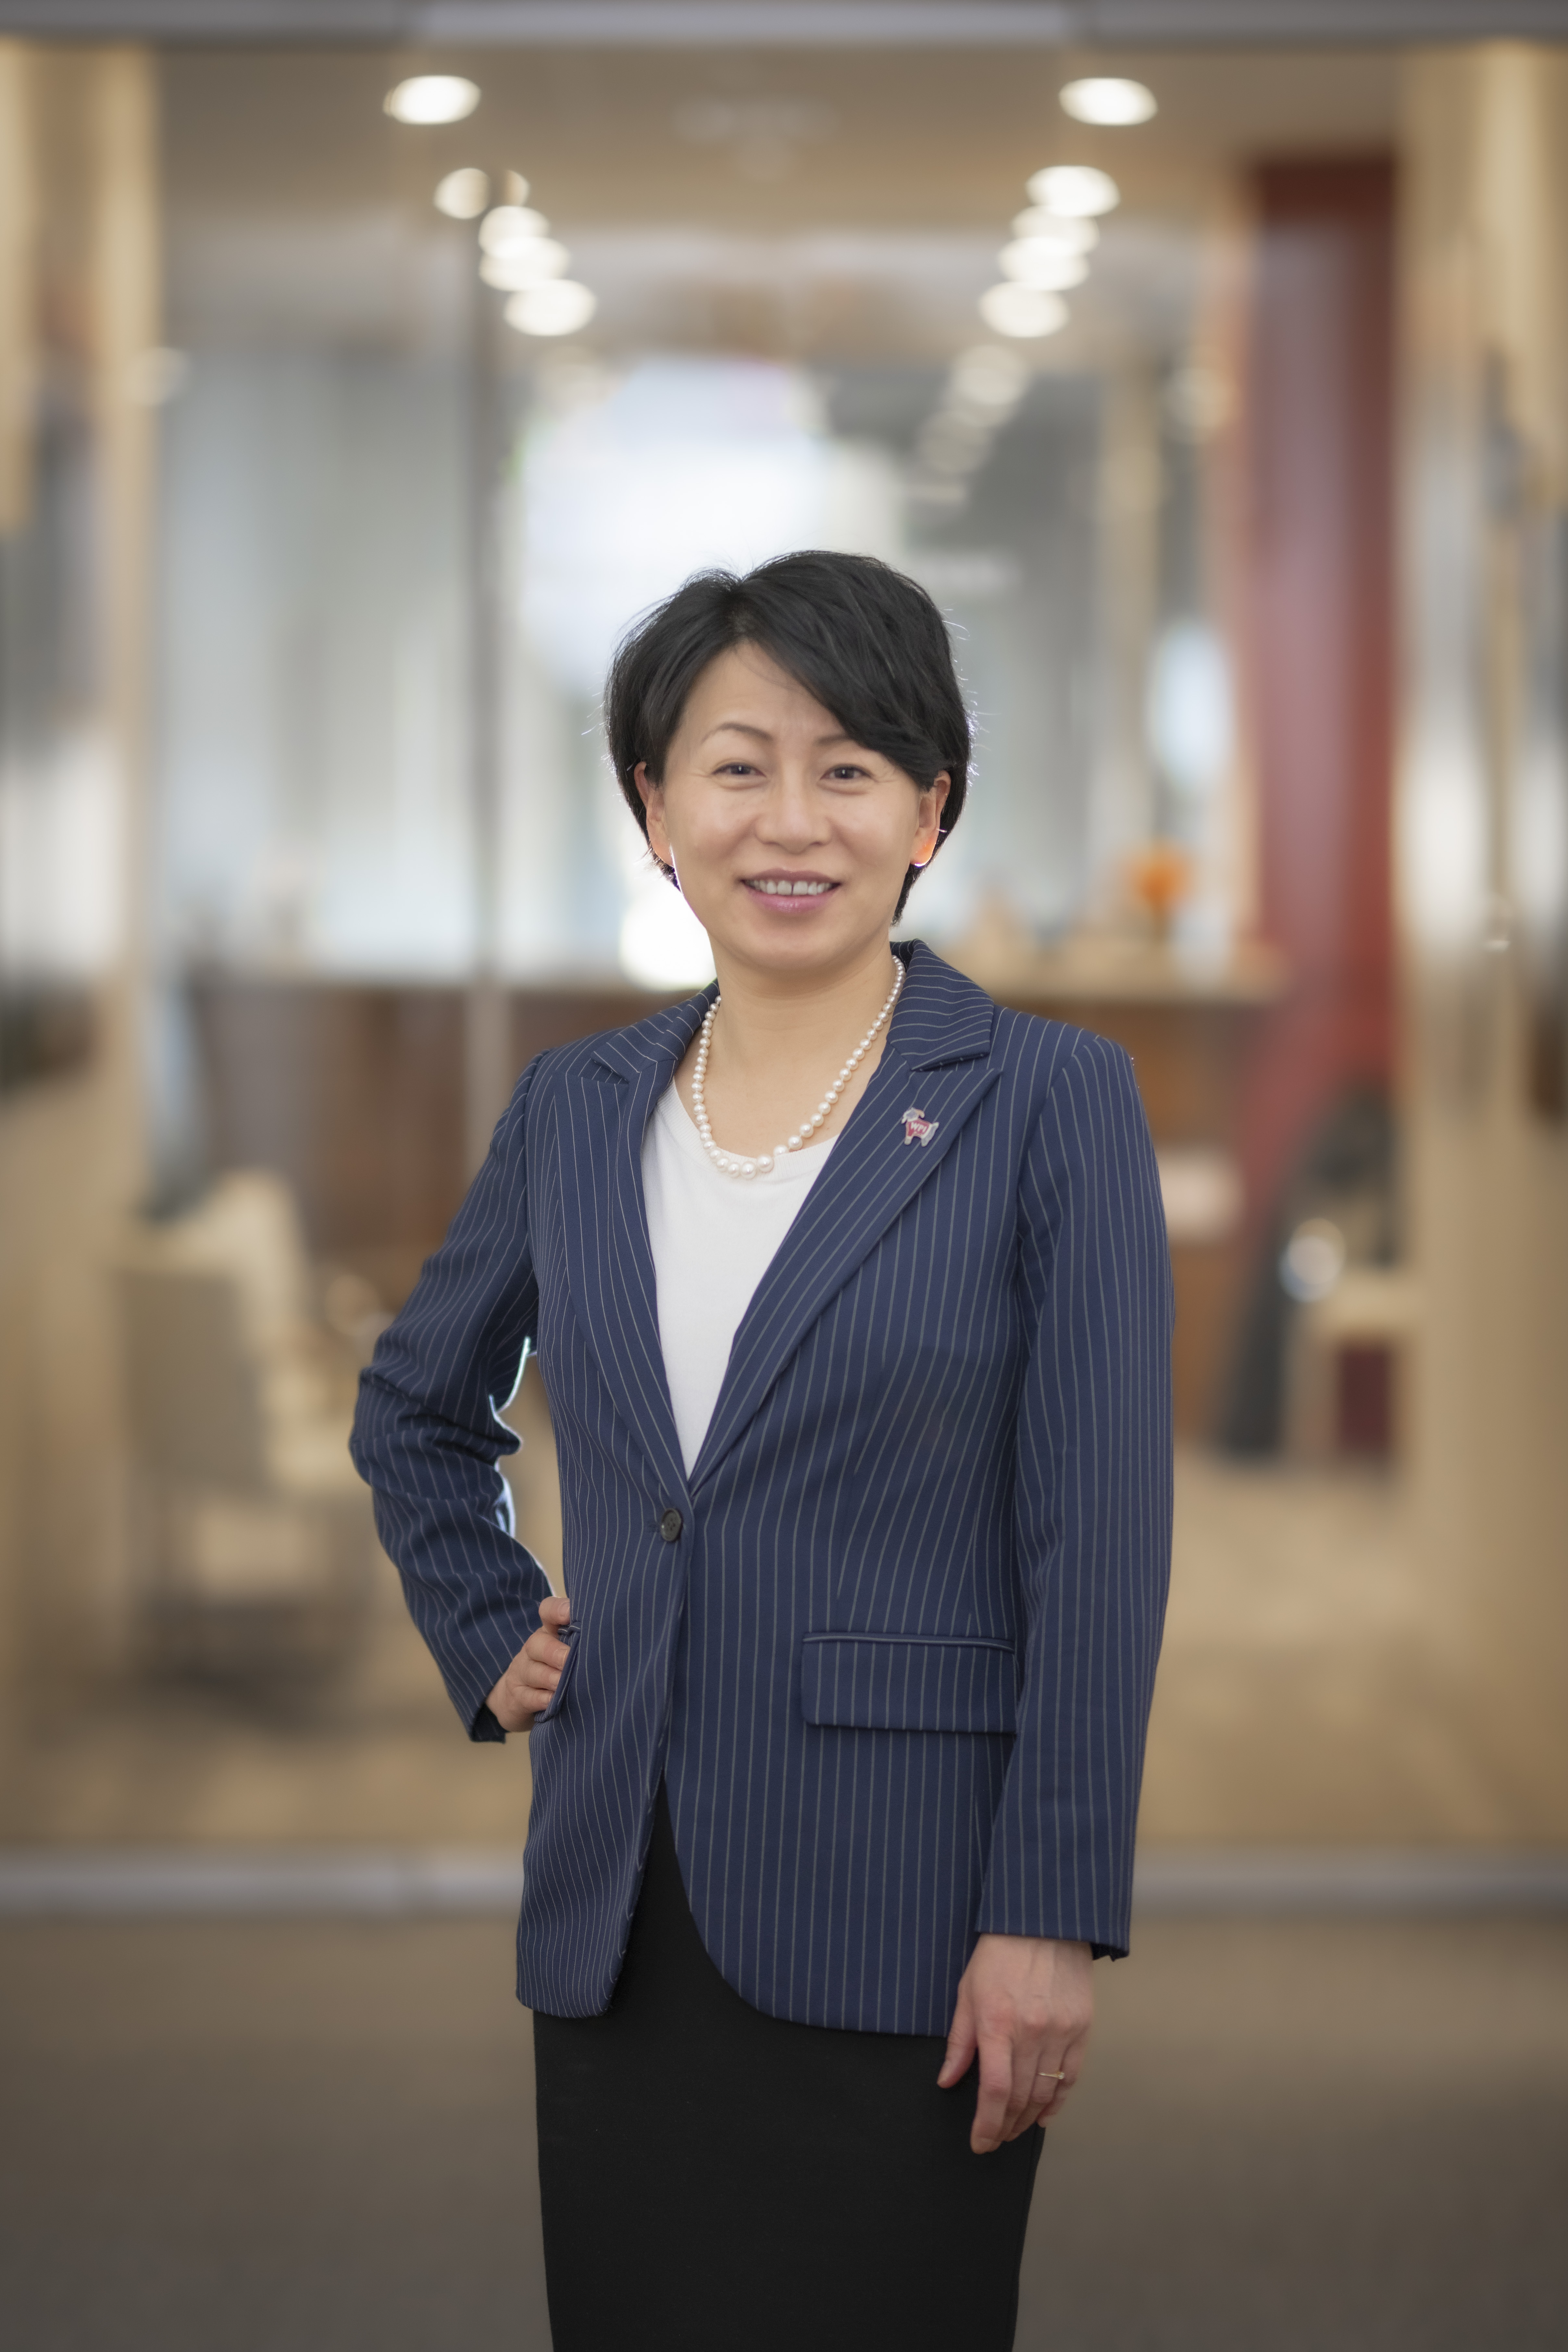 Grace J. Wang, PhD